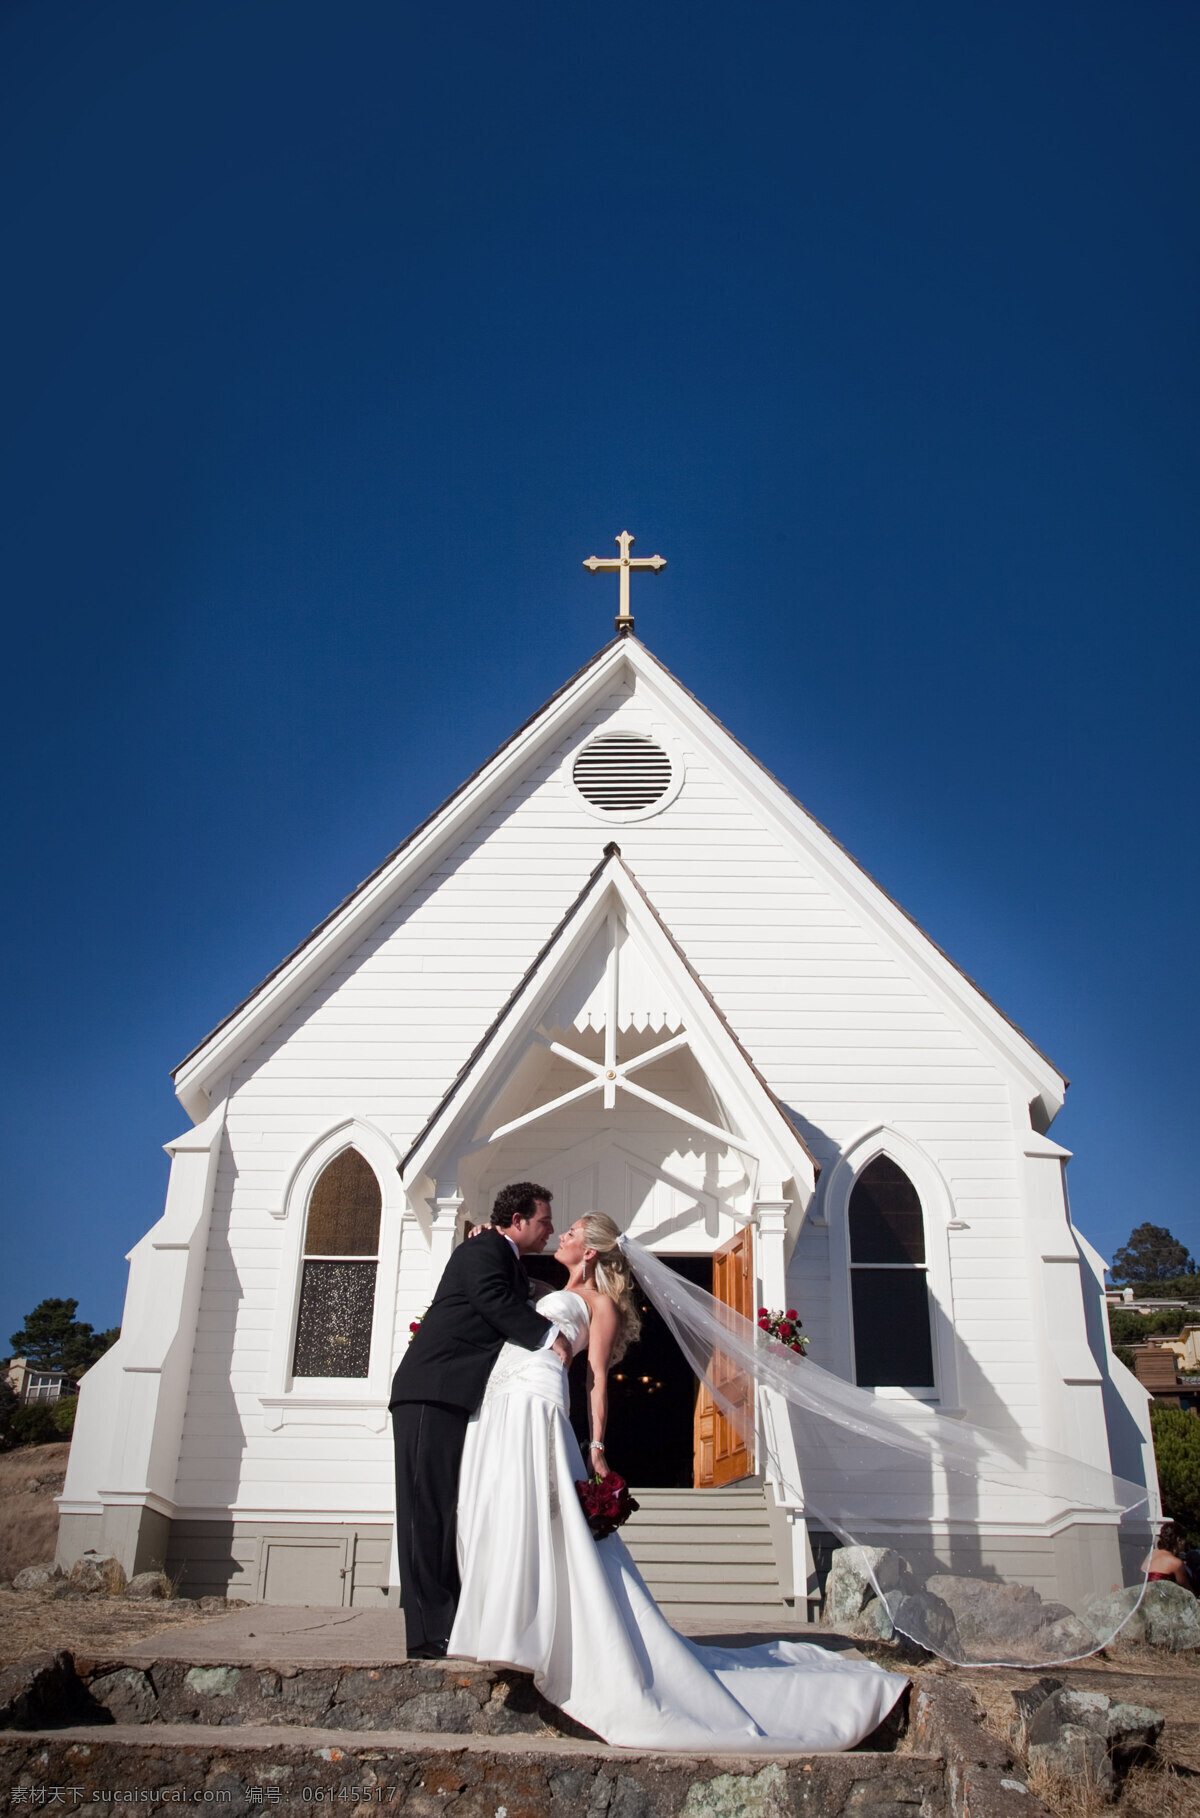 教堂婚礼 教堂 十字架 结婚 外国新娘 婚礼图片 生活百科